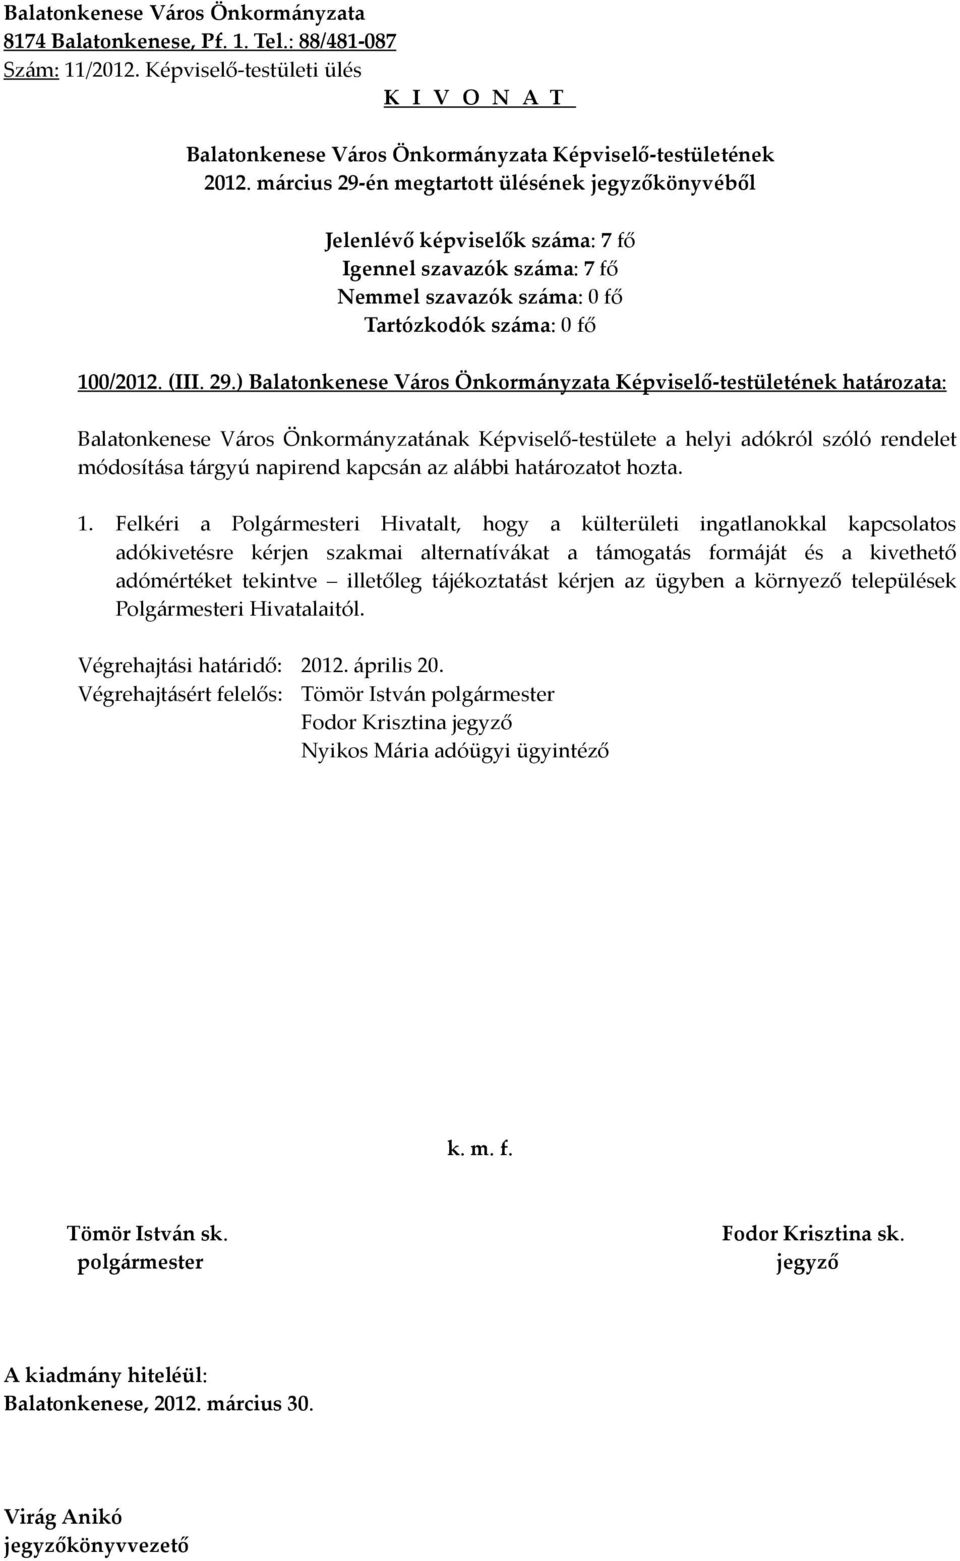 ) határozata: Balatonkenese Város Önkormányzatának Képviselő-testülete a helyi adókról szóló rendelet módosítása tárgyú napirend kapcsán az alábbi határozatot